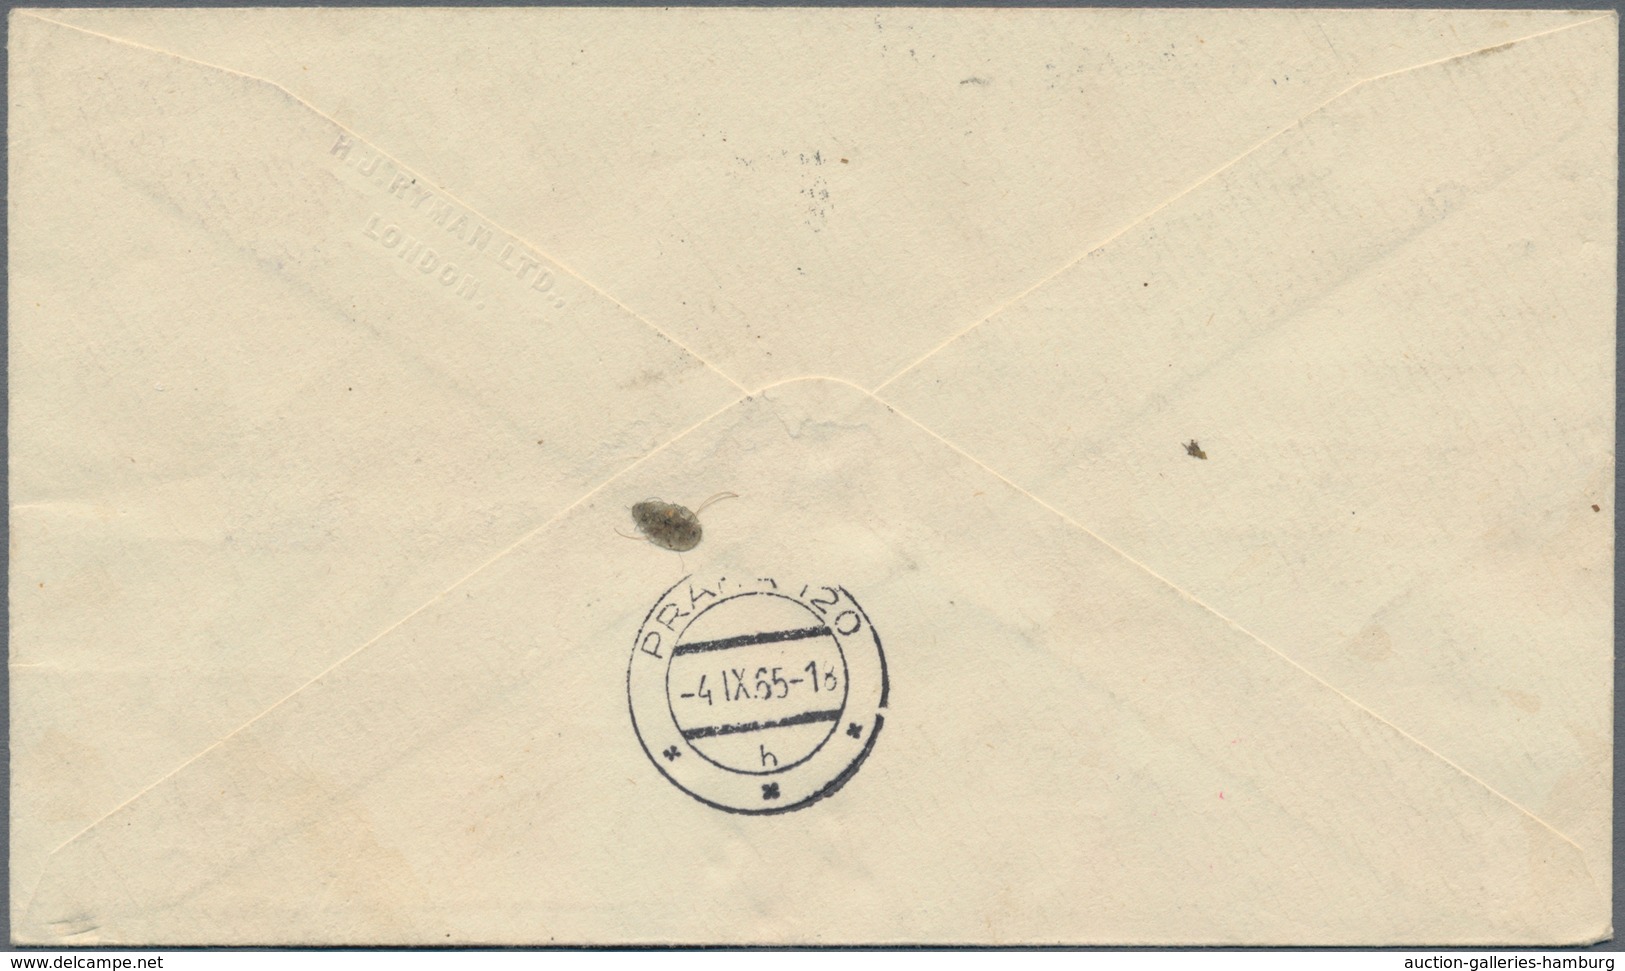 Österreich - Besonderheiten: 1962/1966, 5 Luftpost-Briefe aus Hirschegg und Jungholz (Zolllanschlußg